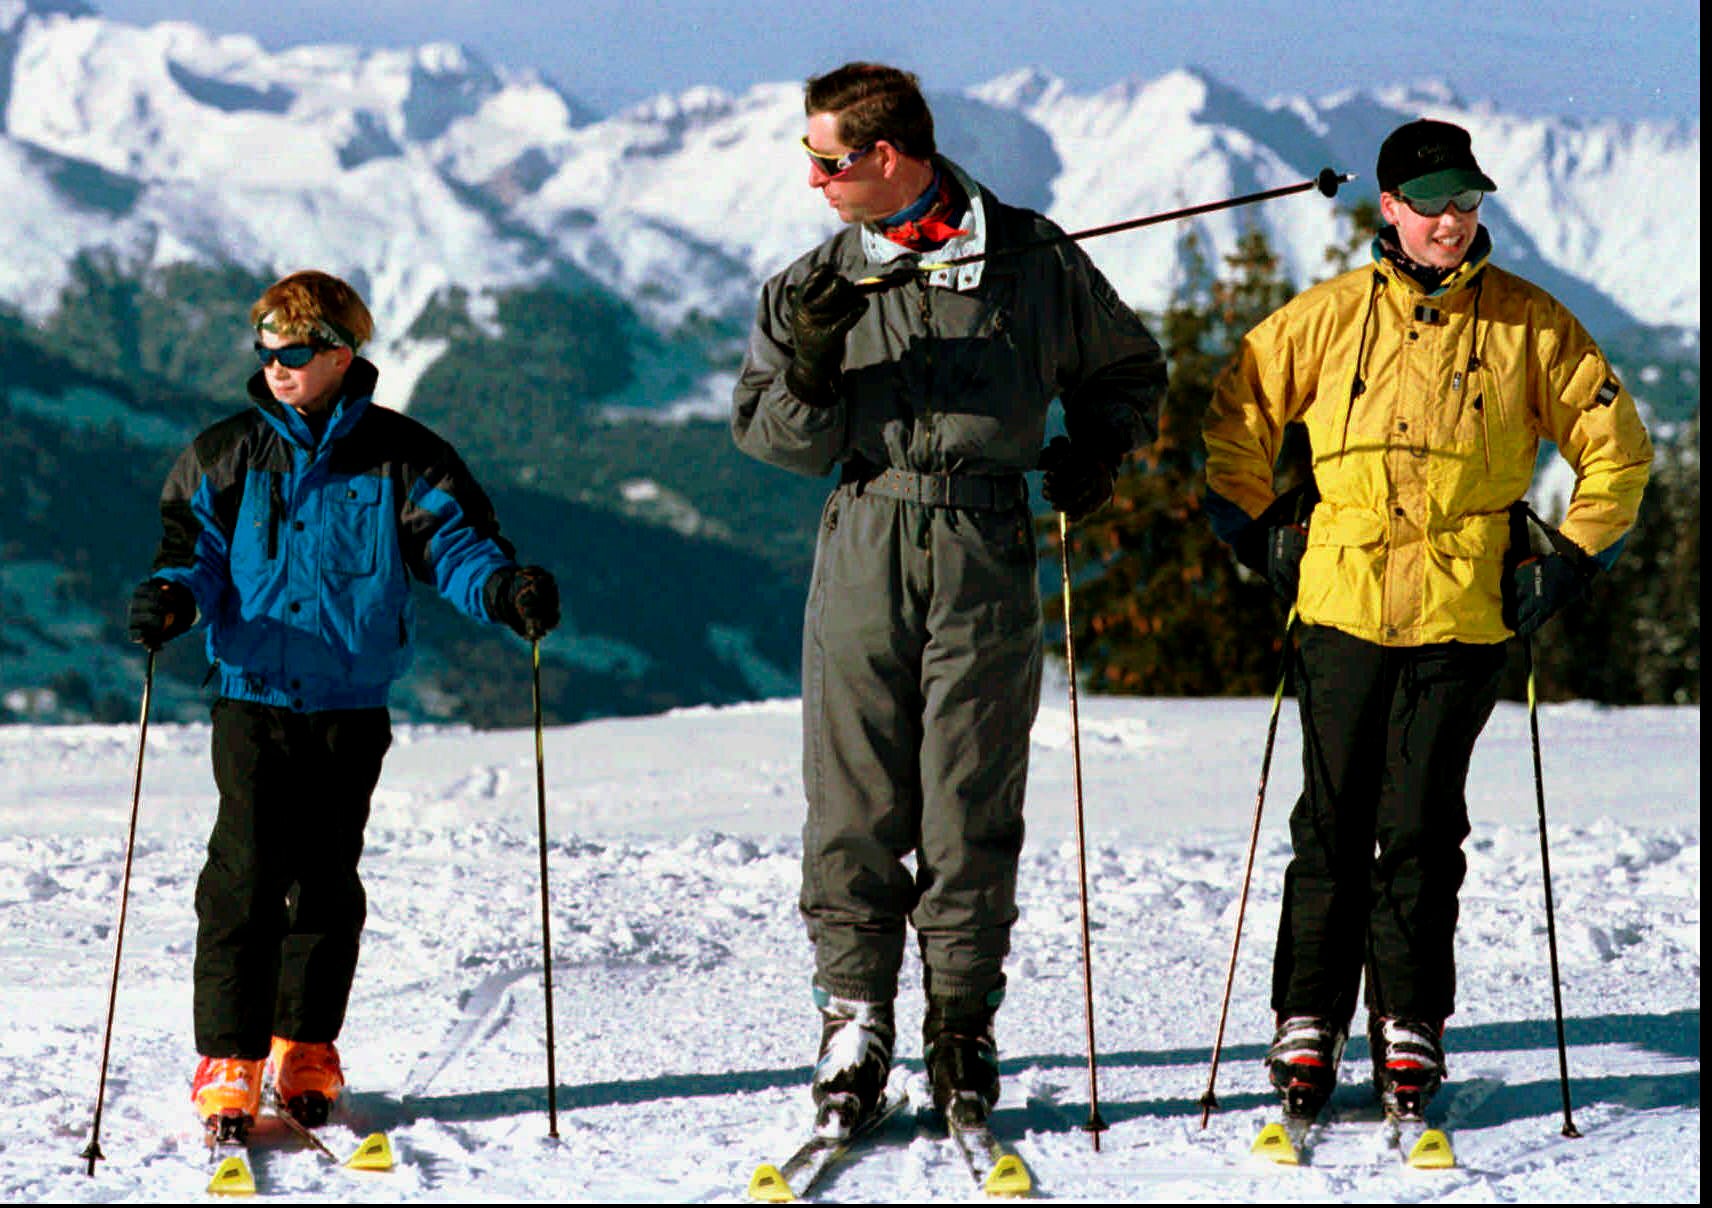 El rey Carlos fotografiado esquiando con sus hijos, los príncipes William y Harry.